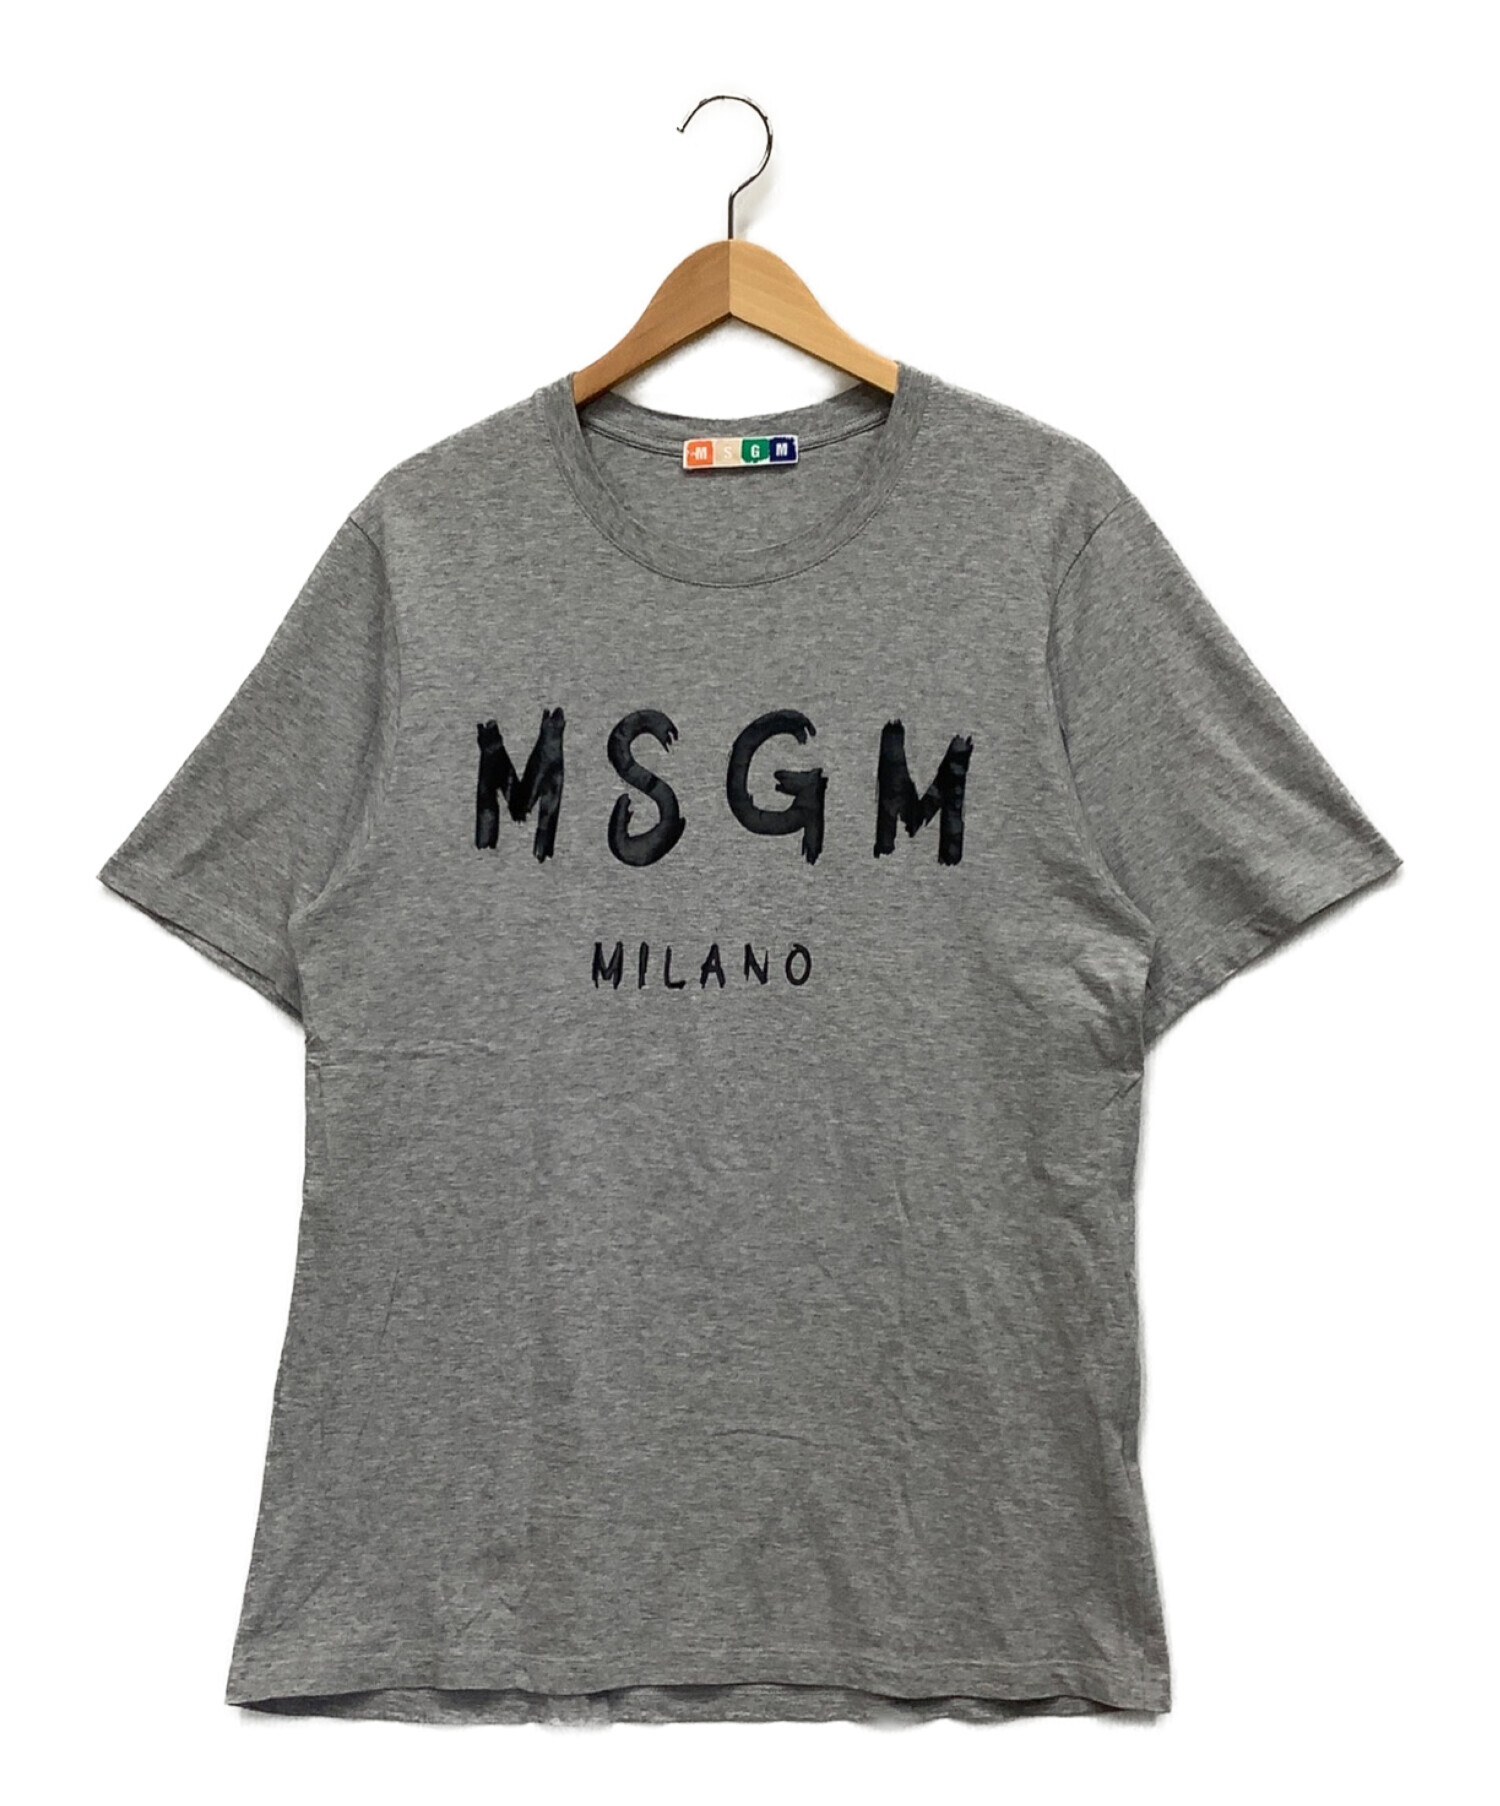 MSGM (エムエスジーエム) Tシャツ グレー サイズ:M